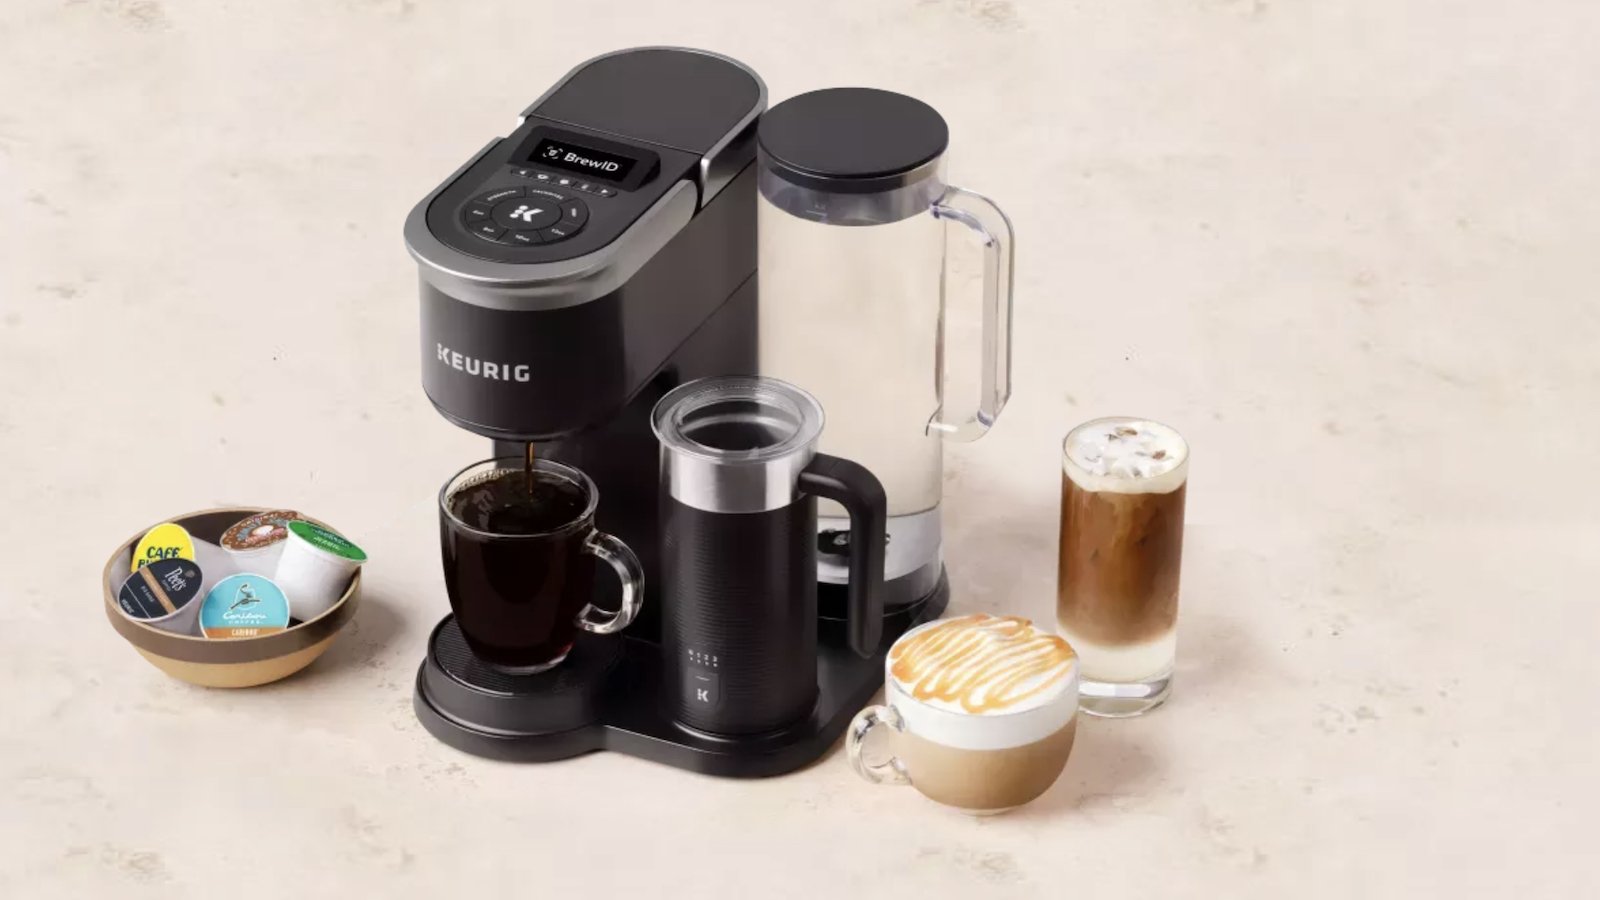 Keurig K-Café SMART Single Serve Coffee Maker recommends drinks based on your taste